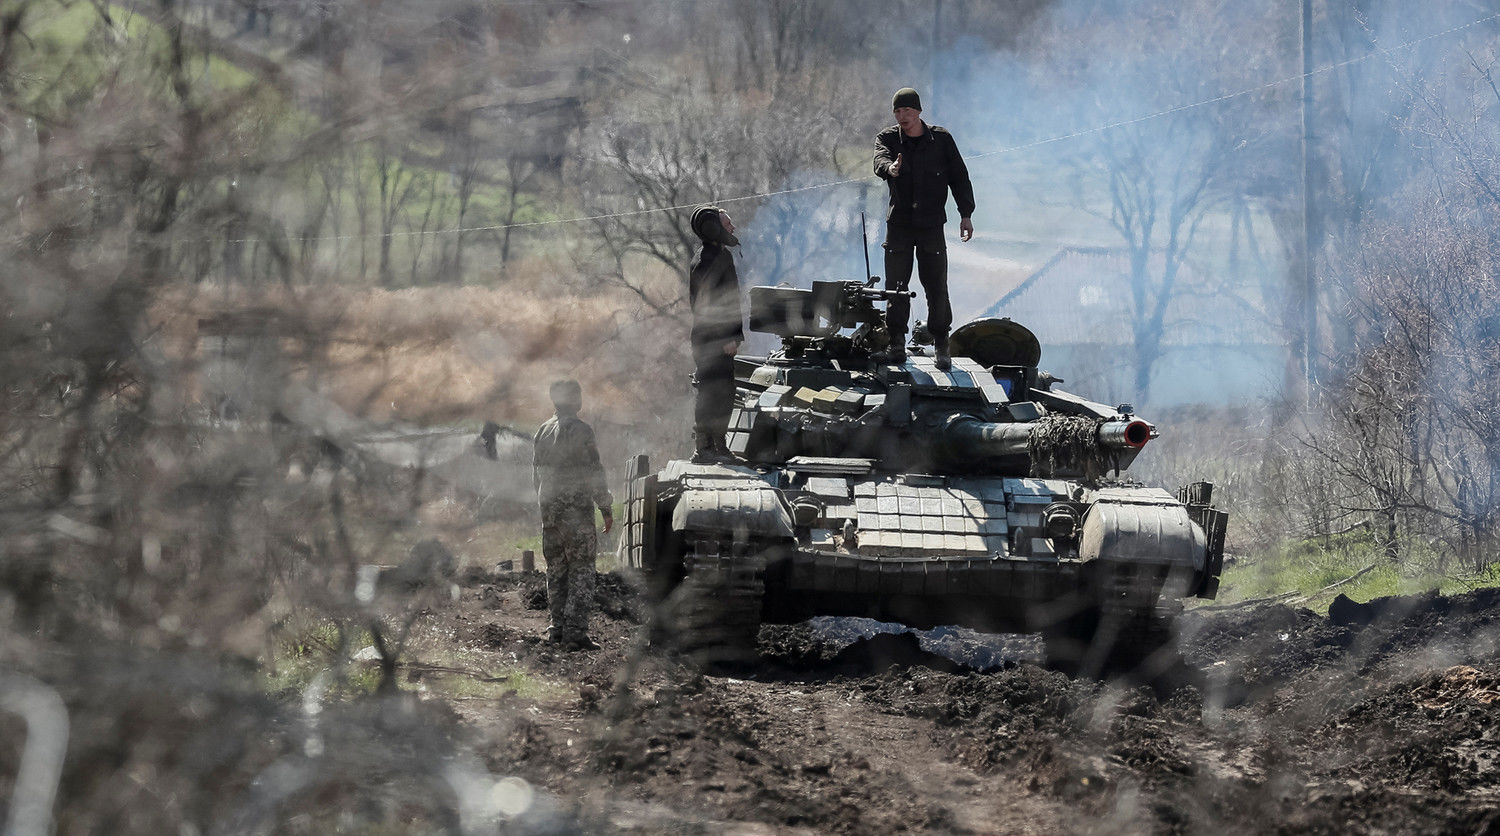 Стрелков об успехах ВСУ на Донбассе: "Скоро на взлетке ДАП их окопы появятся"